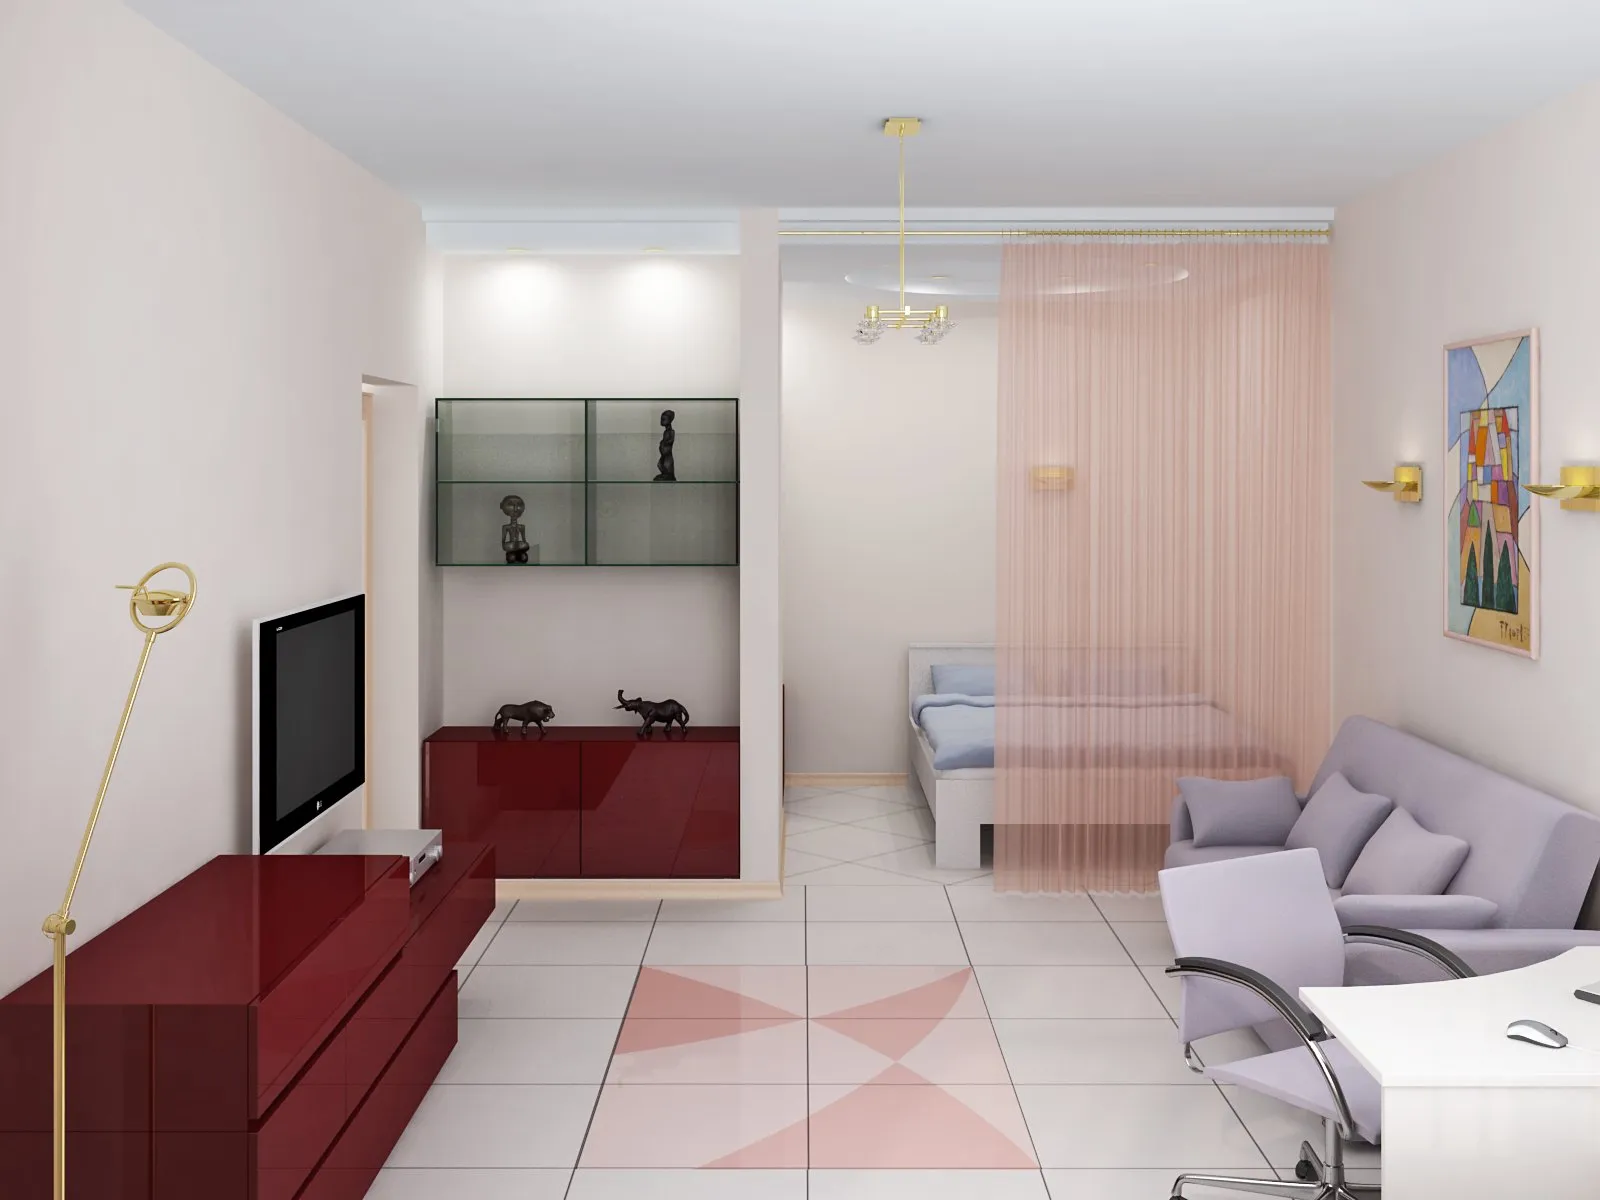 Дизайн квартиры и дизайн интерьера на примере наших работ: